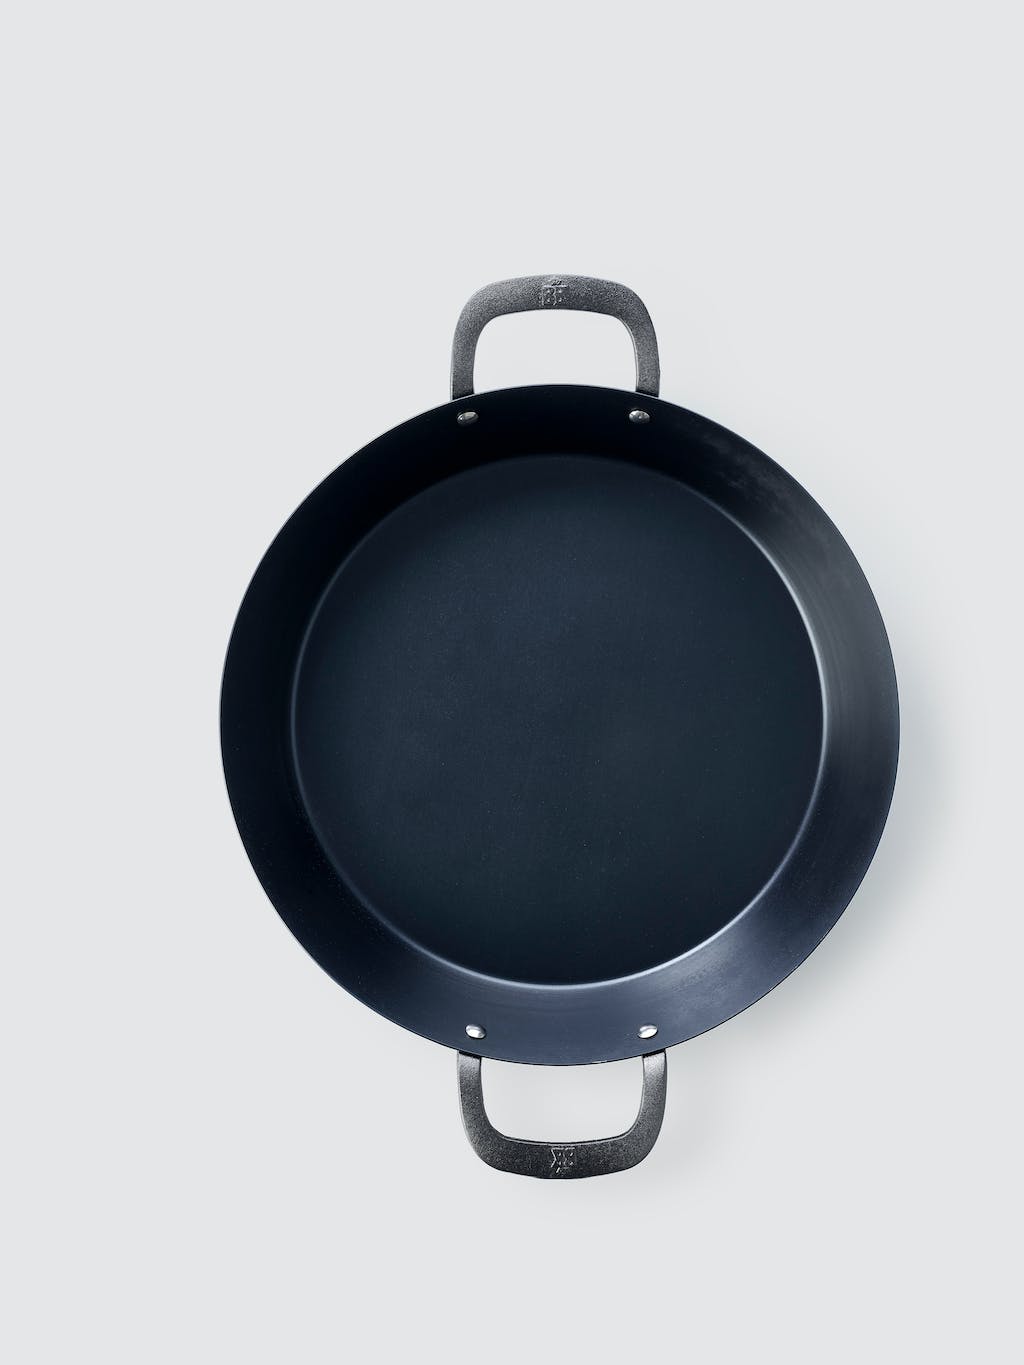 BK Black Steel Paella Pan with Side Handles